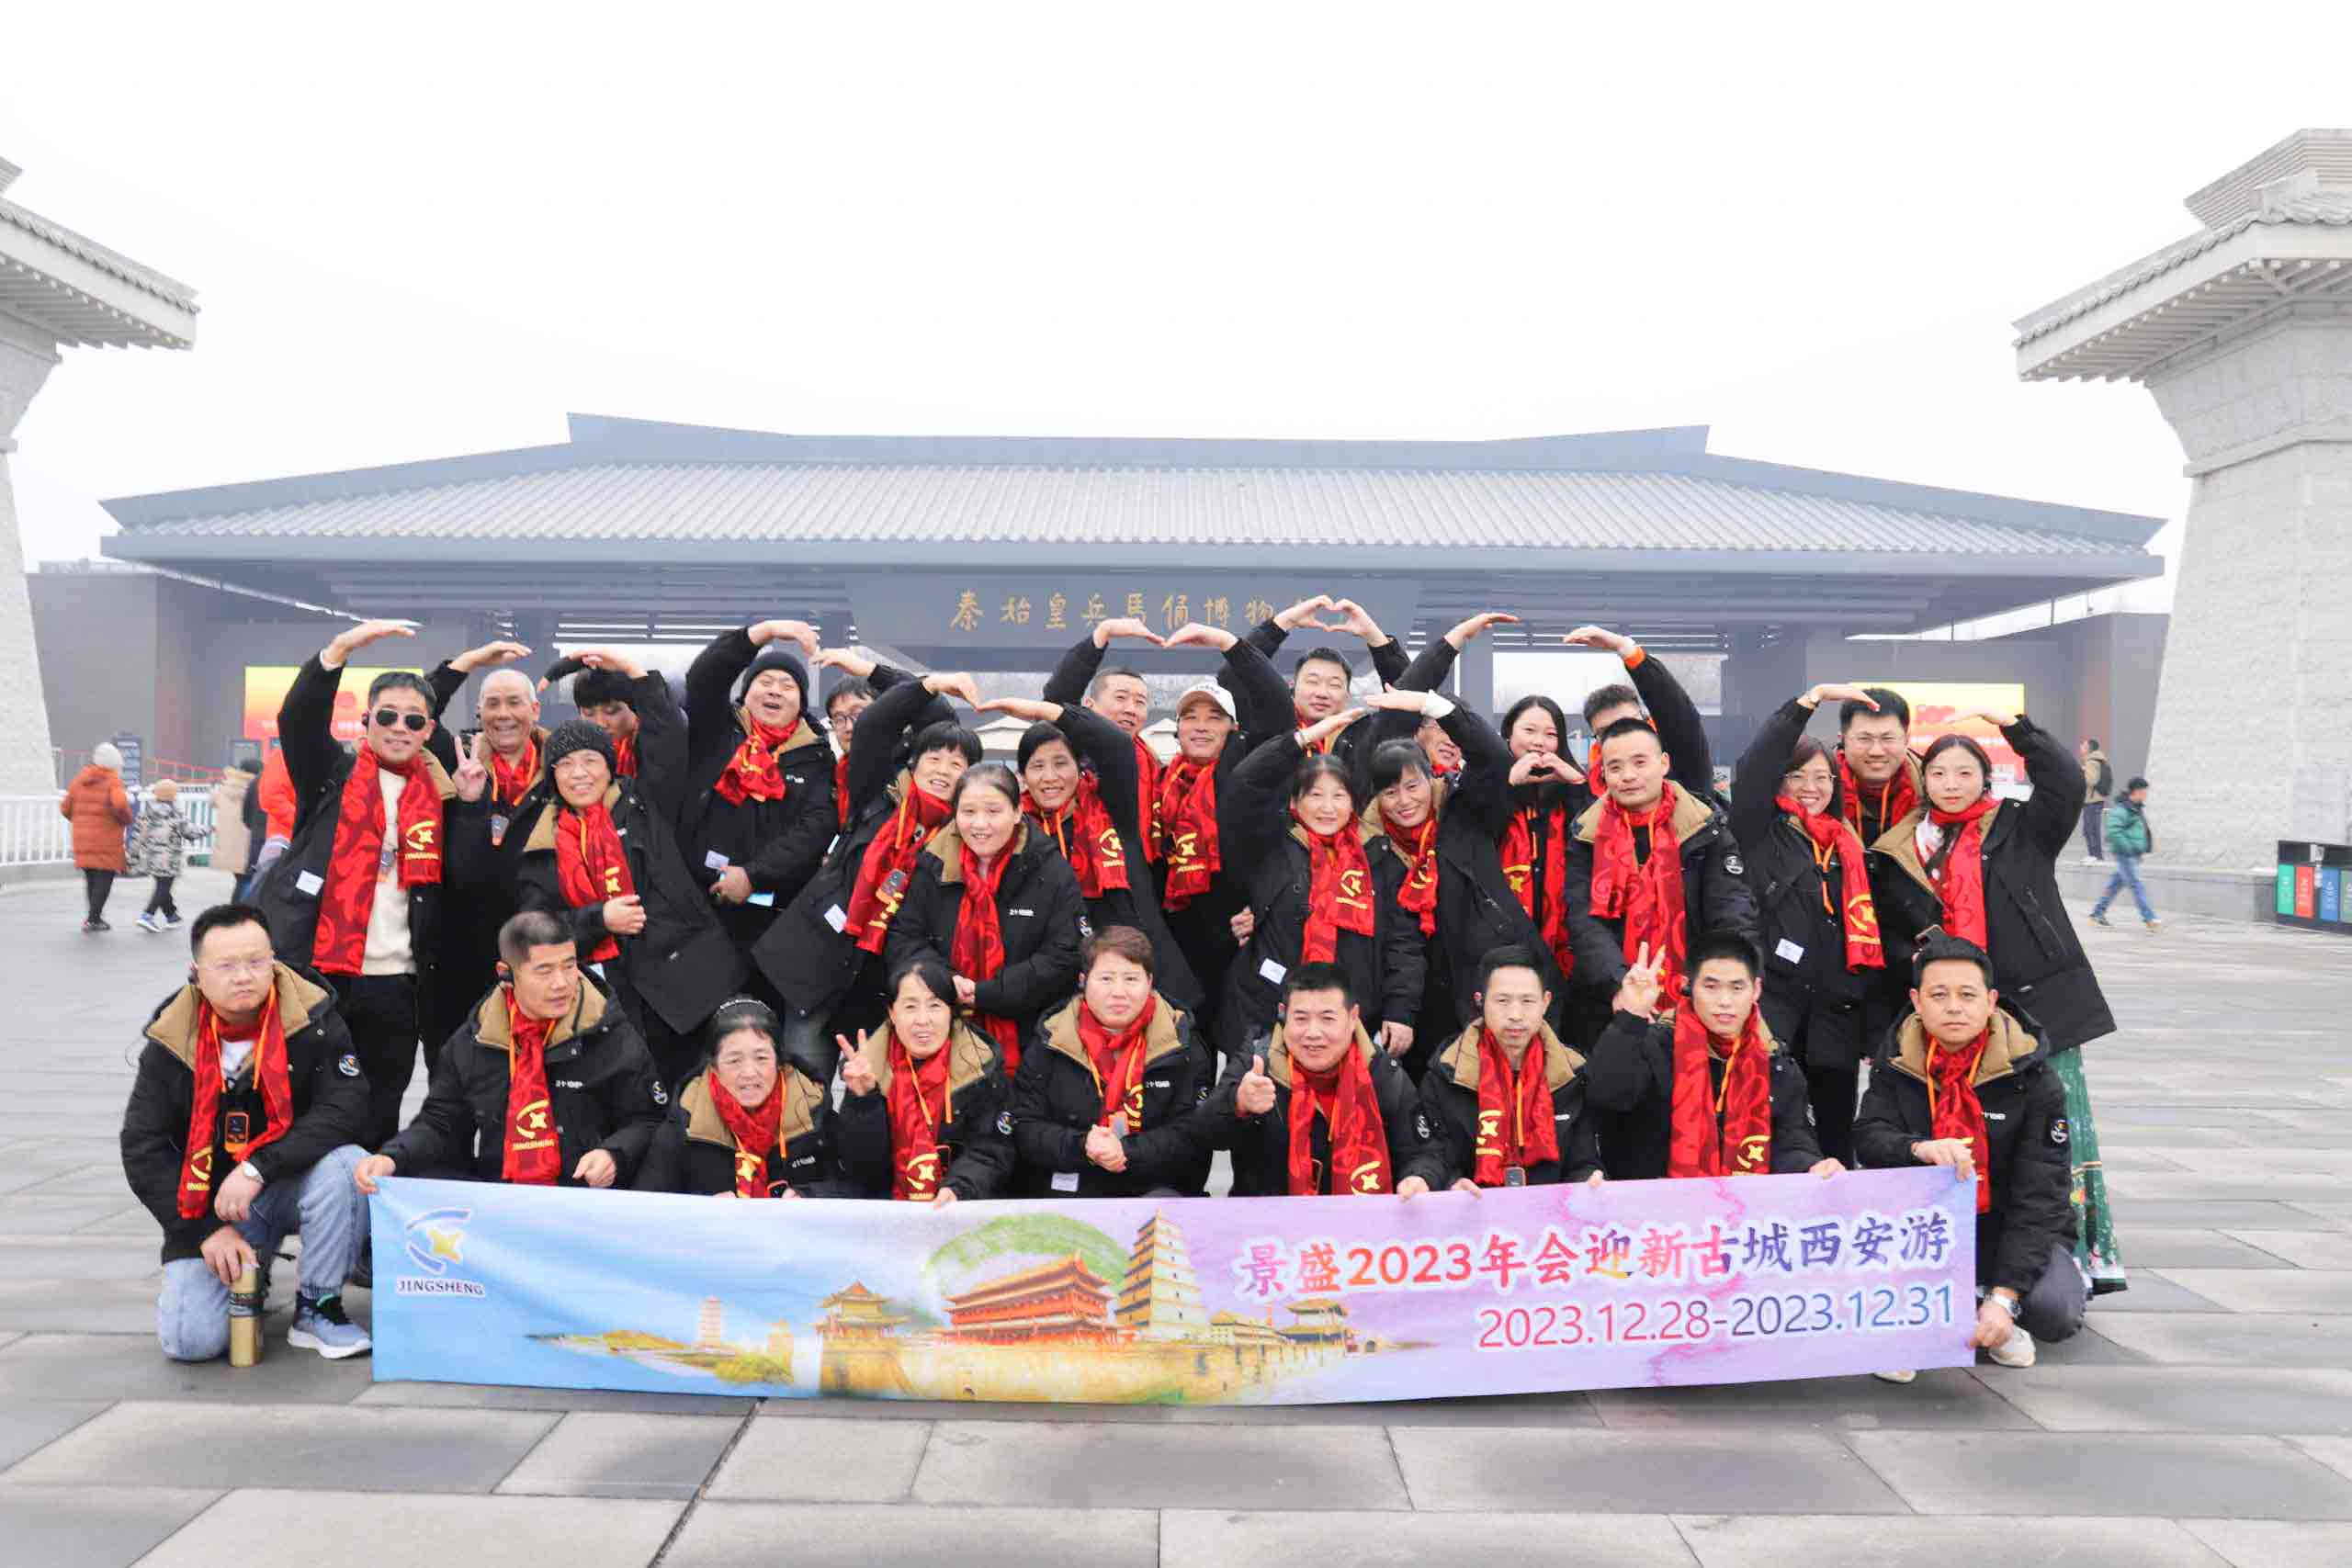 I dipendenti dell'azienda si godono il viaggio nella città di Xi'an